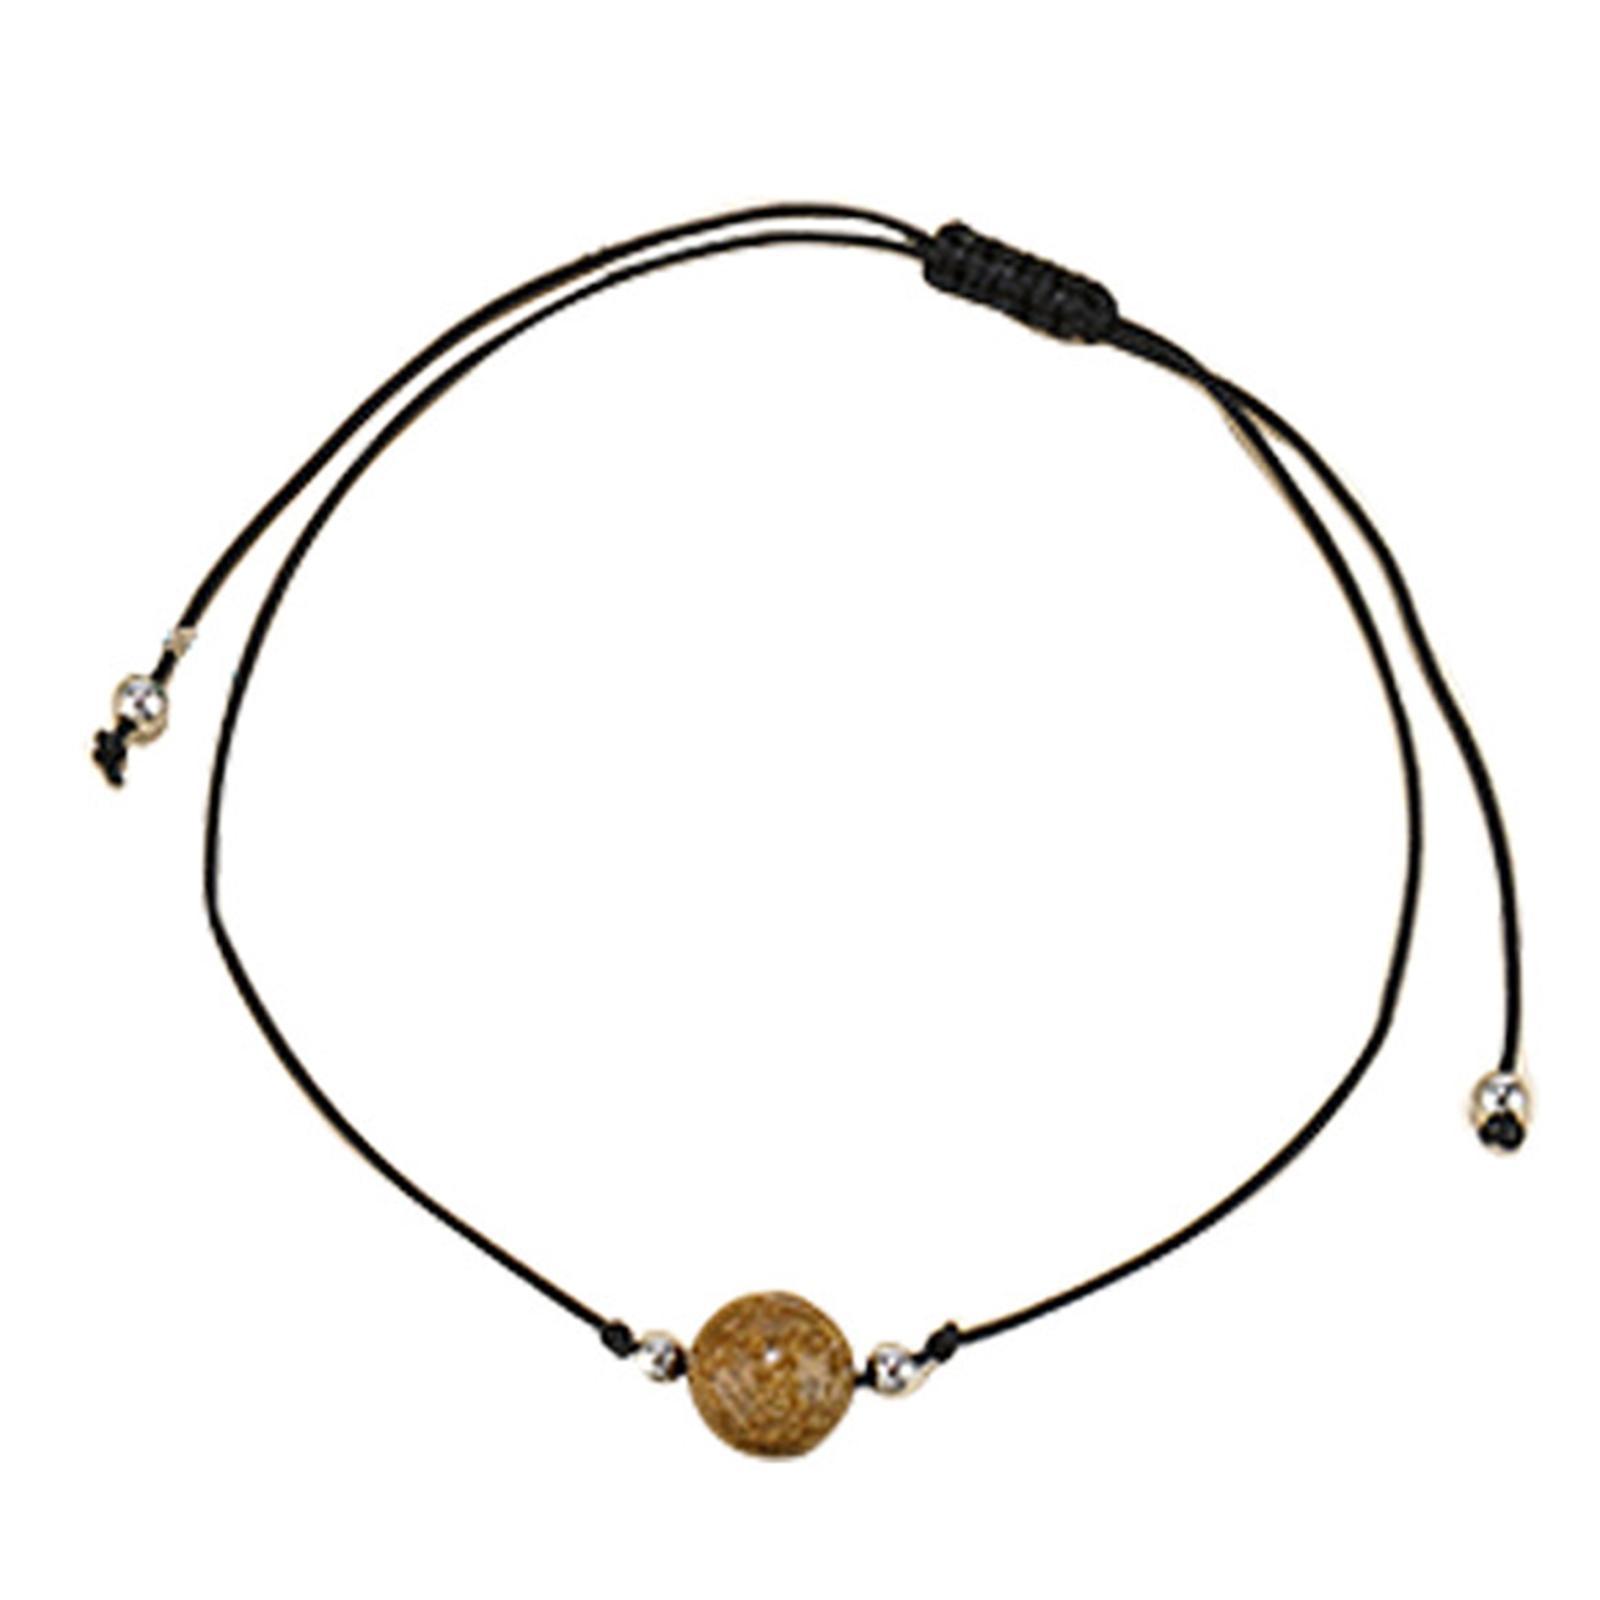 5 Pieces Braided Bead Bracelet Wrist Jewelry String Bracelets for